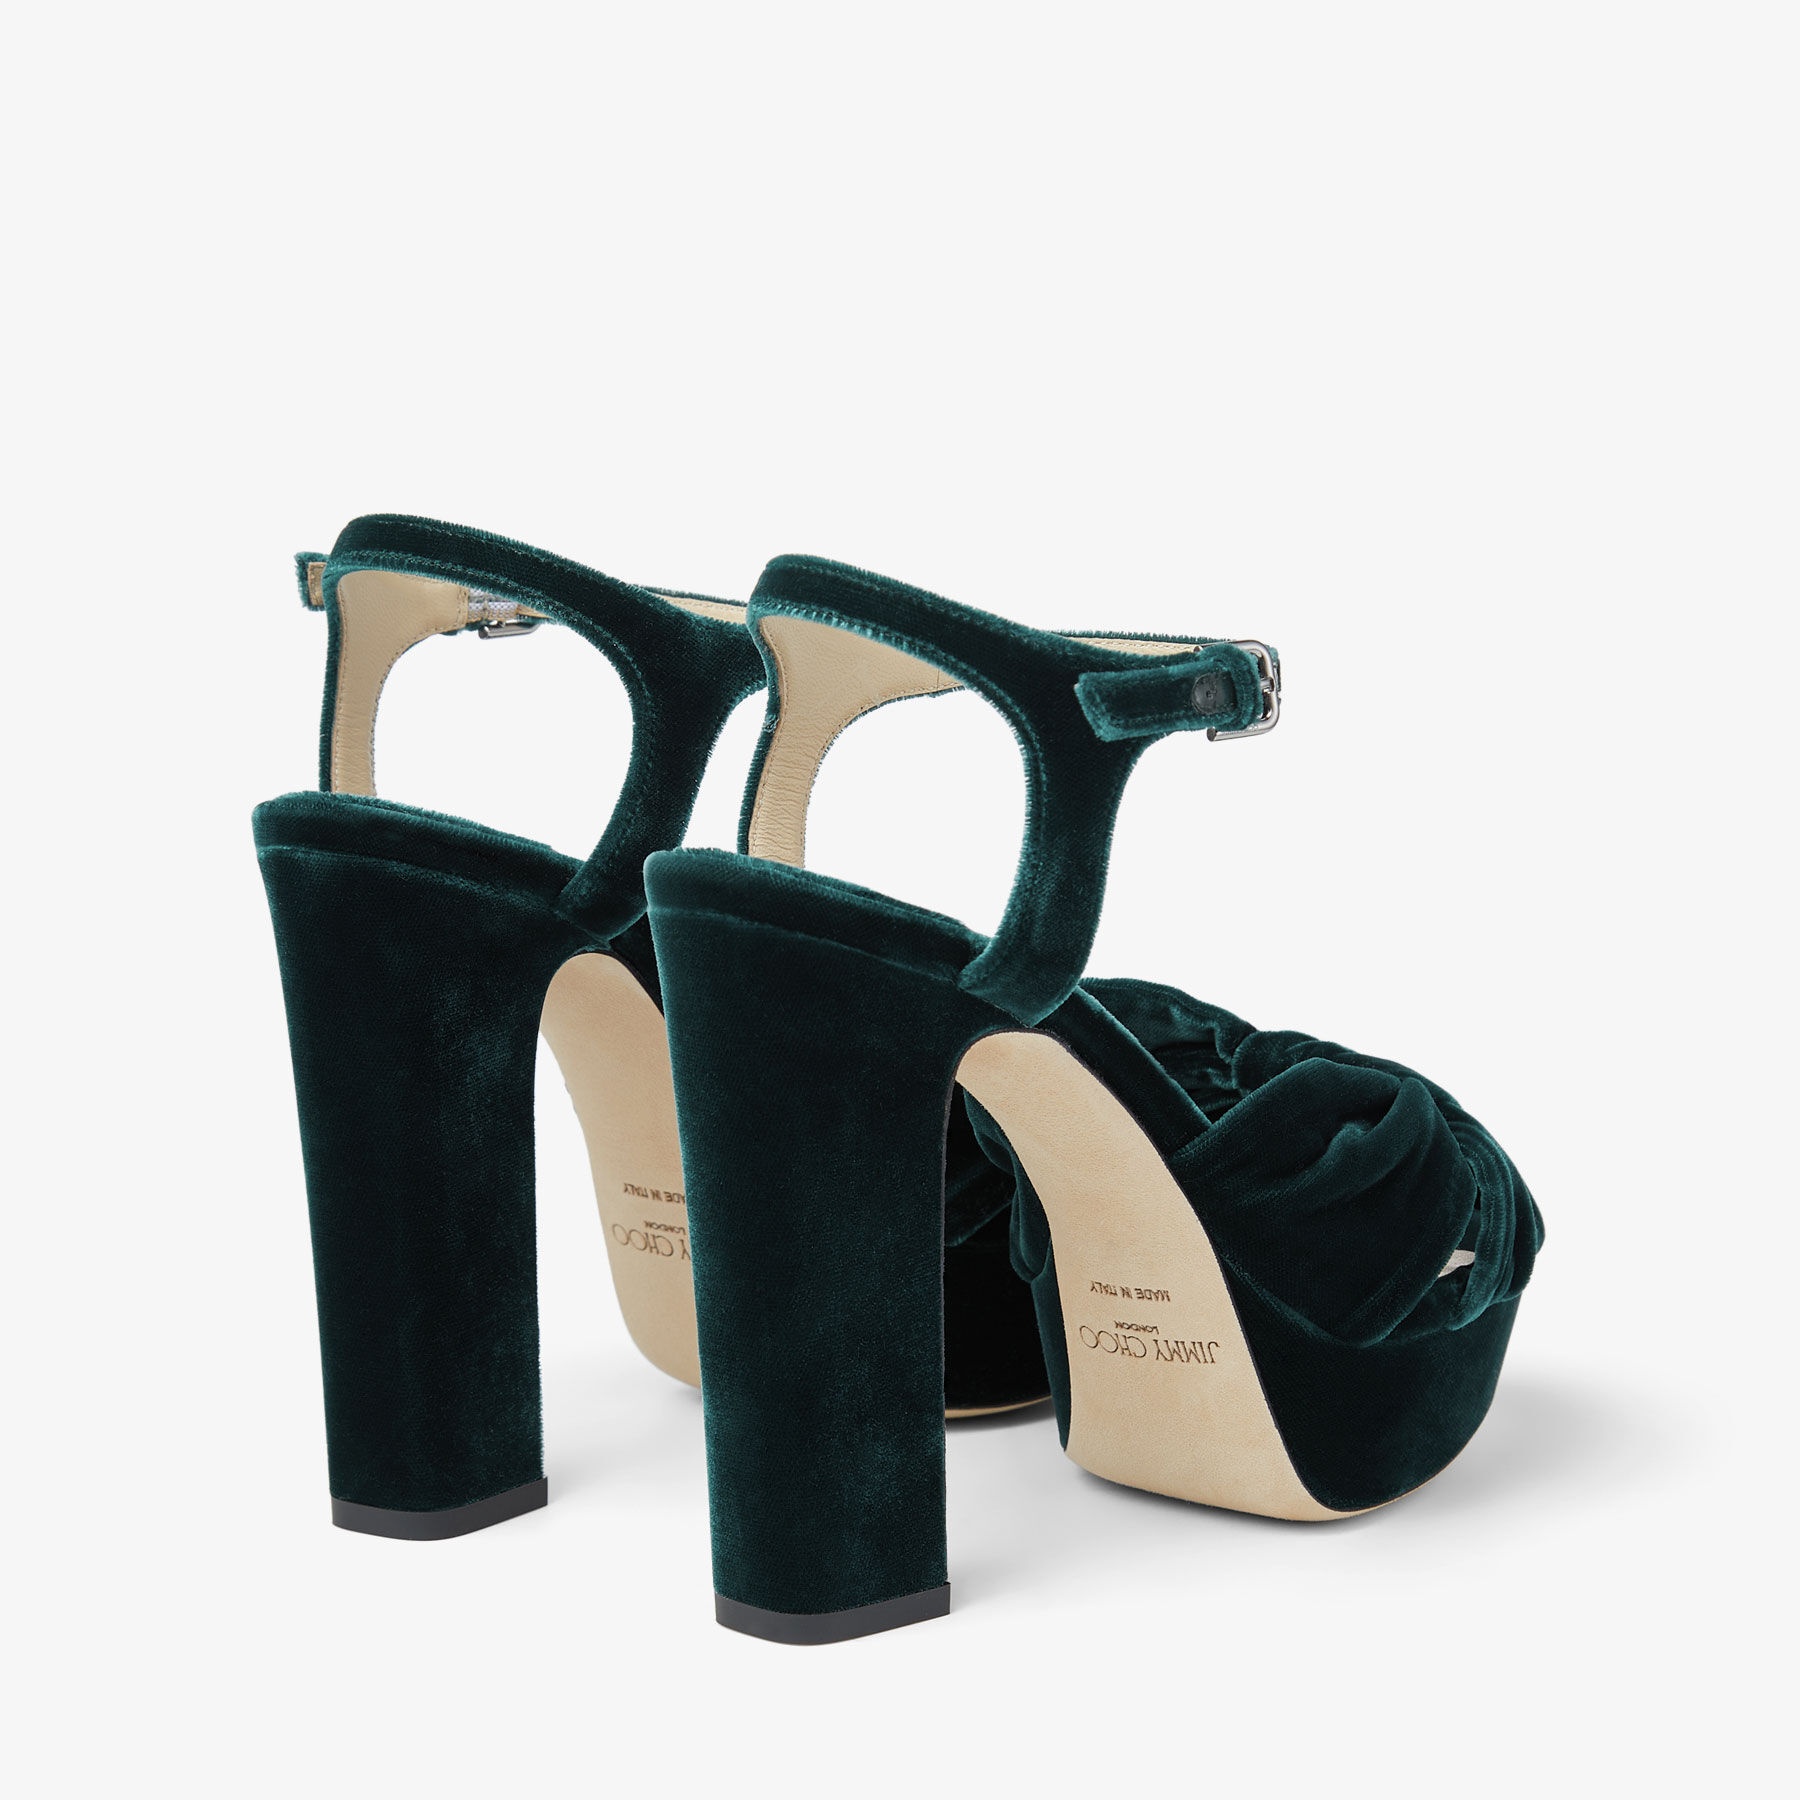 Heloise 120
Dark Green Velvet Platform Sandals - 6